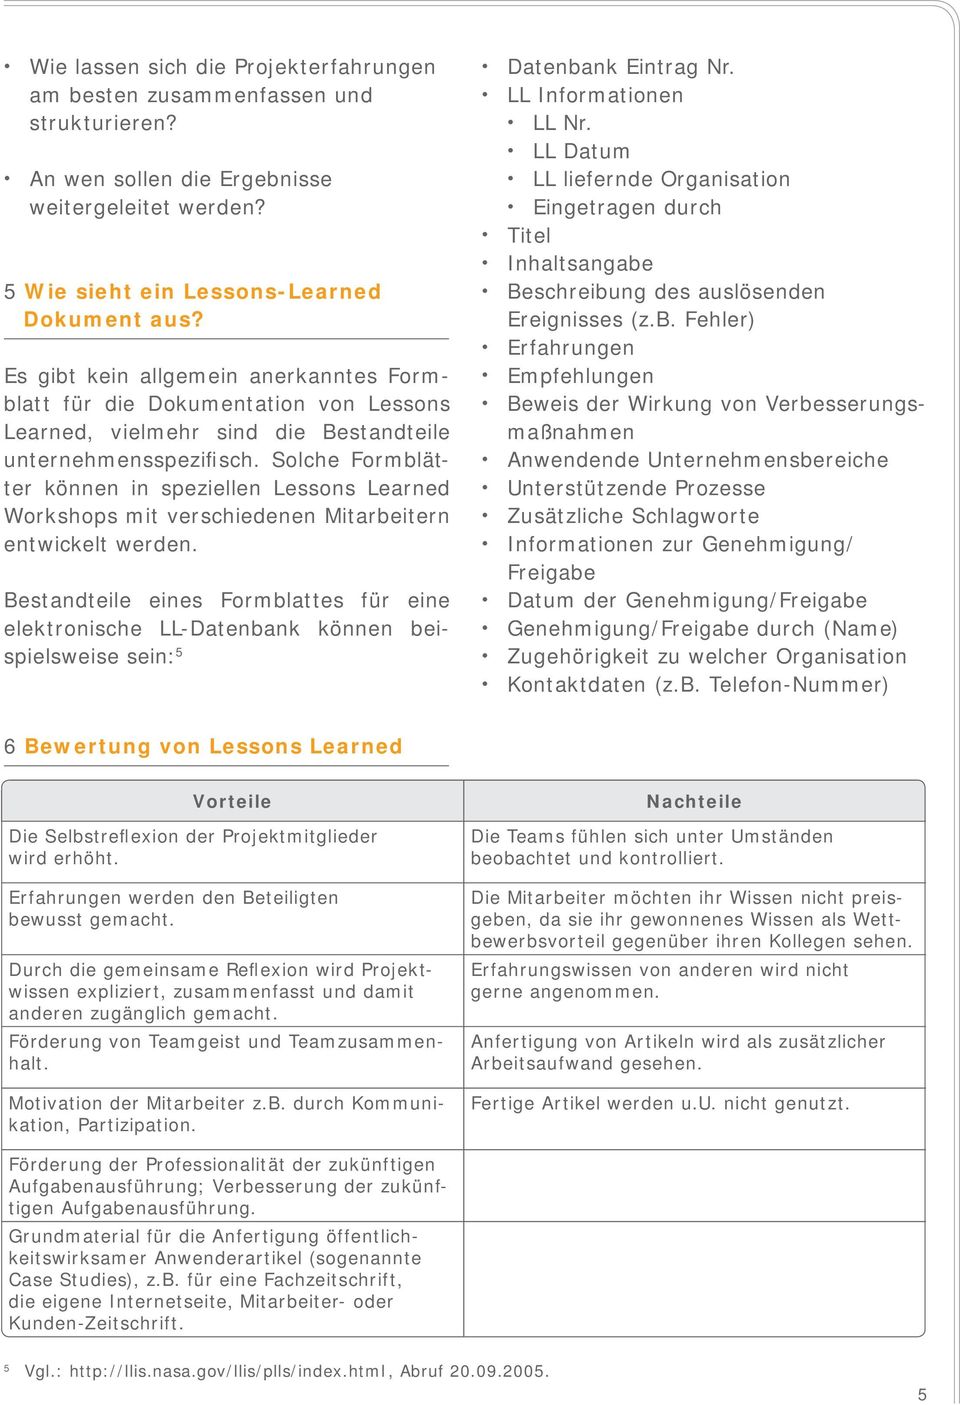 Solche Formblätter können in speziellen Lessons Learned Workshops mit verschiedenen Mitarbeitern entwickelt werden.